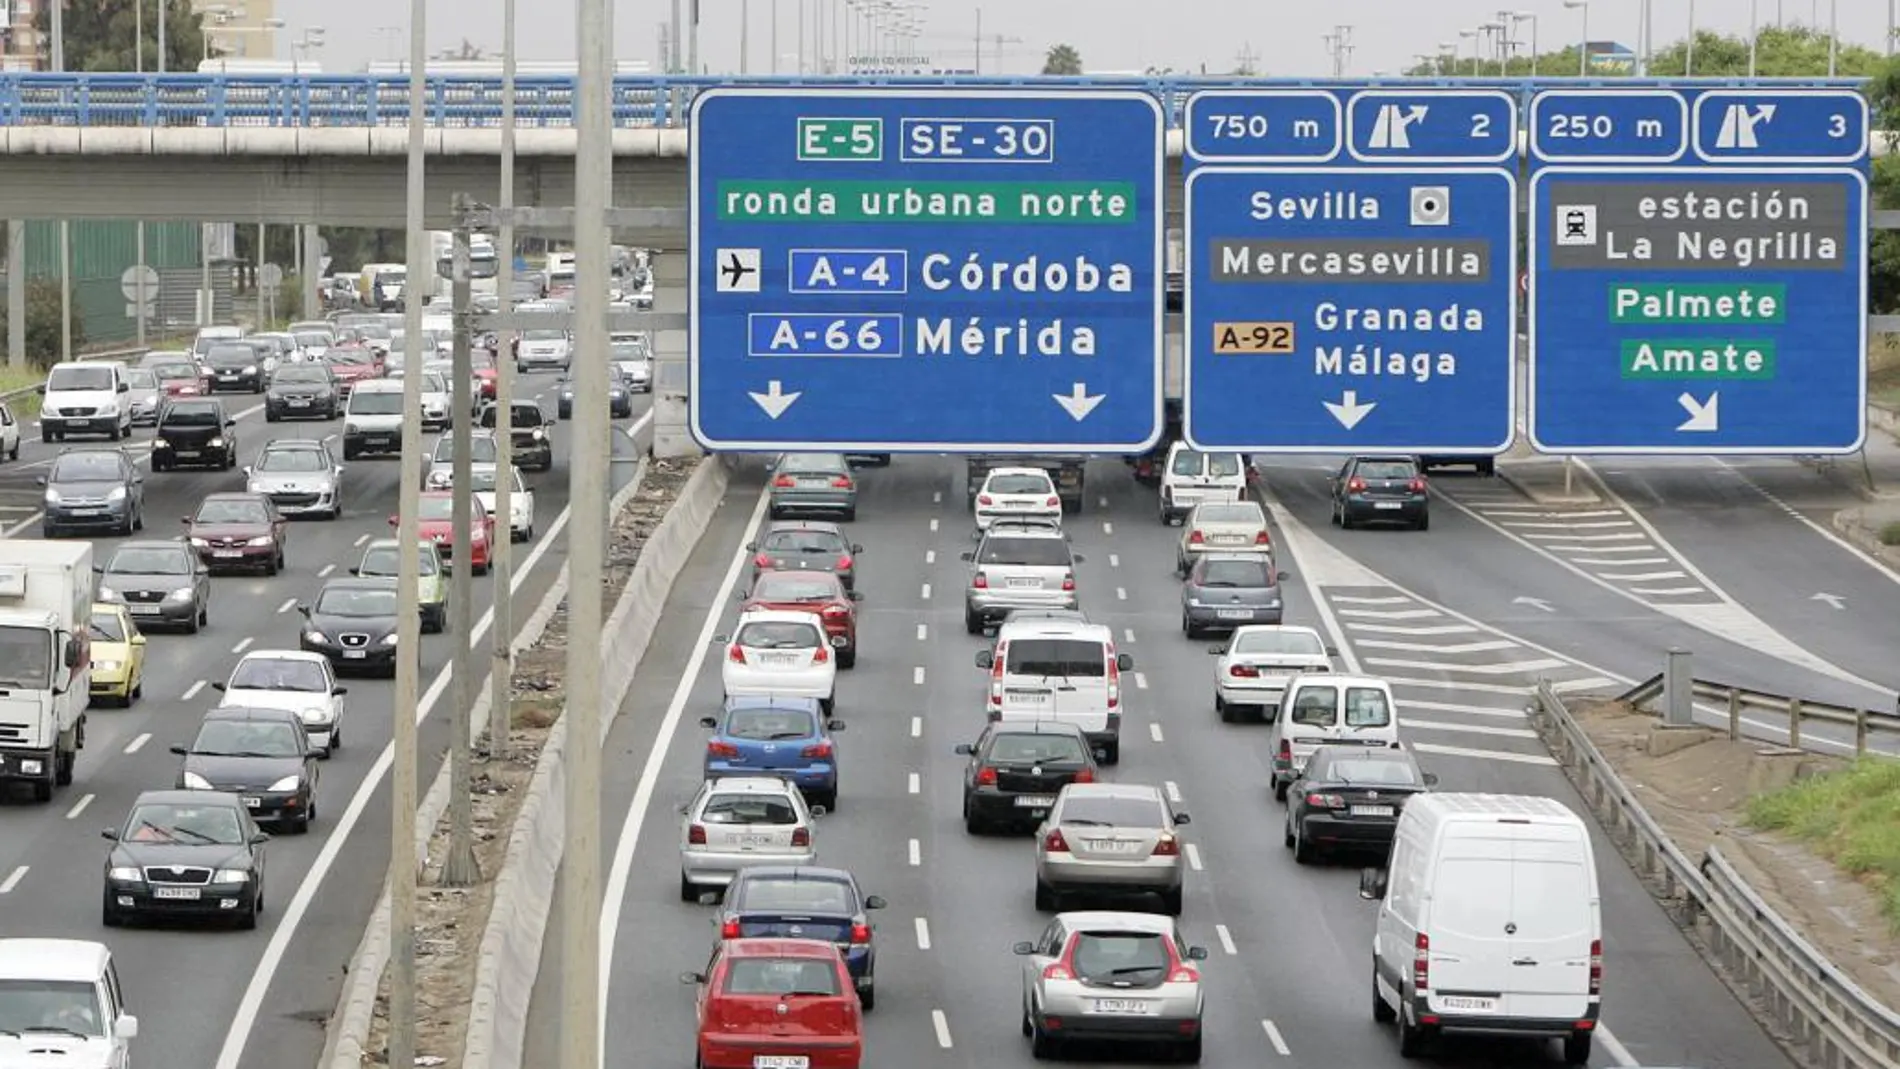 Los automovilistas de Córdoba pasan 16,8 días al año en atascos y los de Granada, 42 días, según Socialdrive